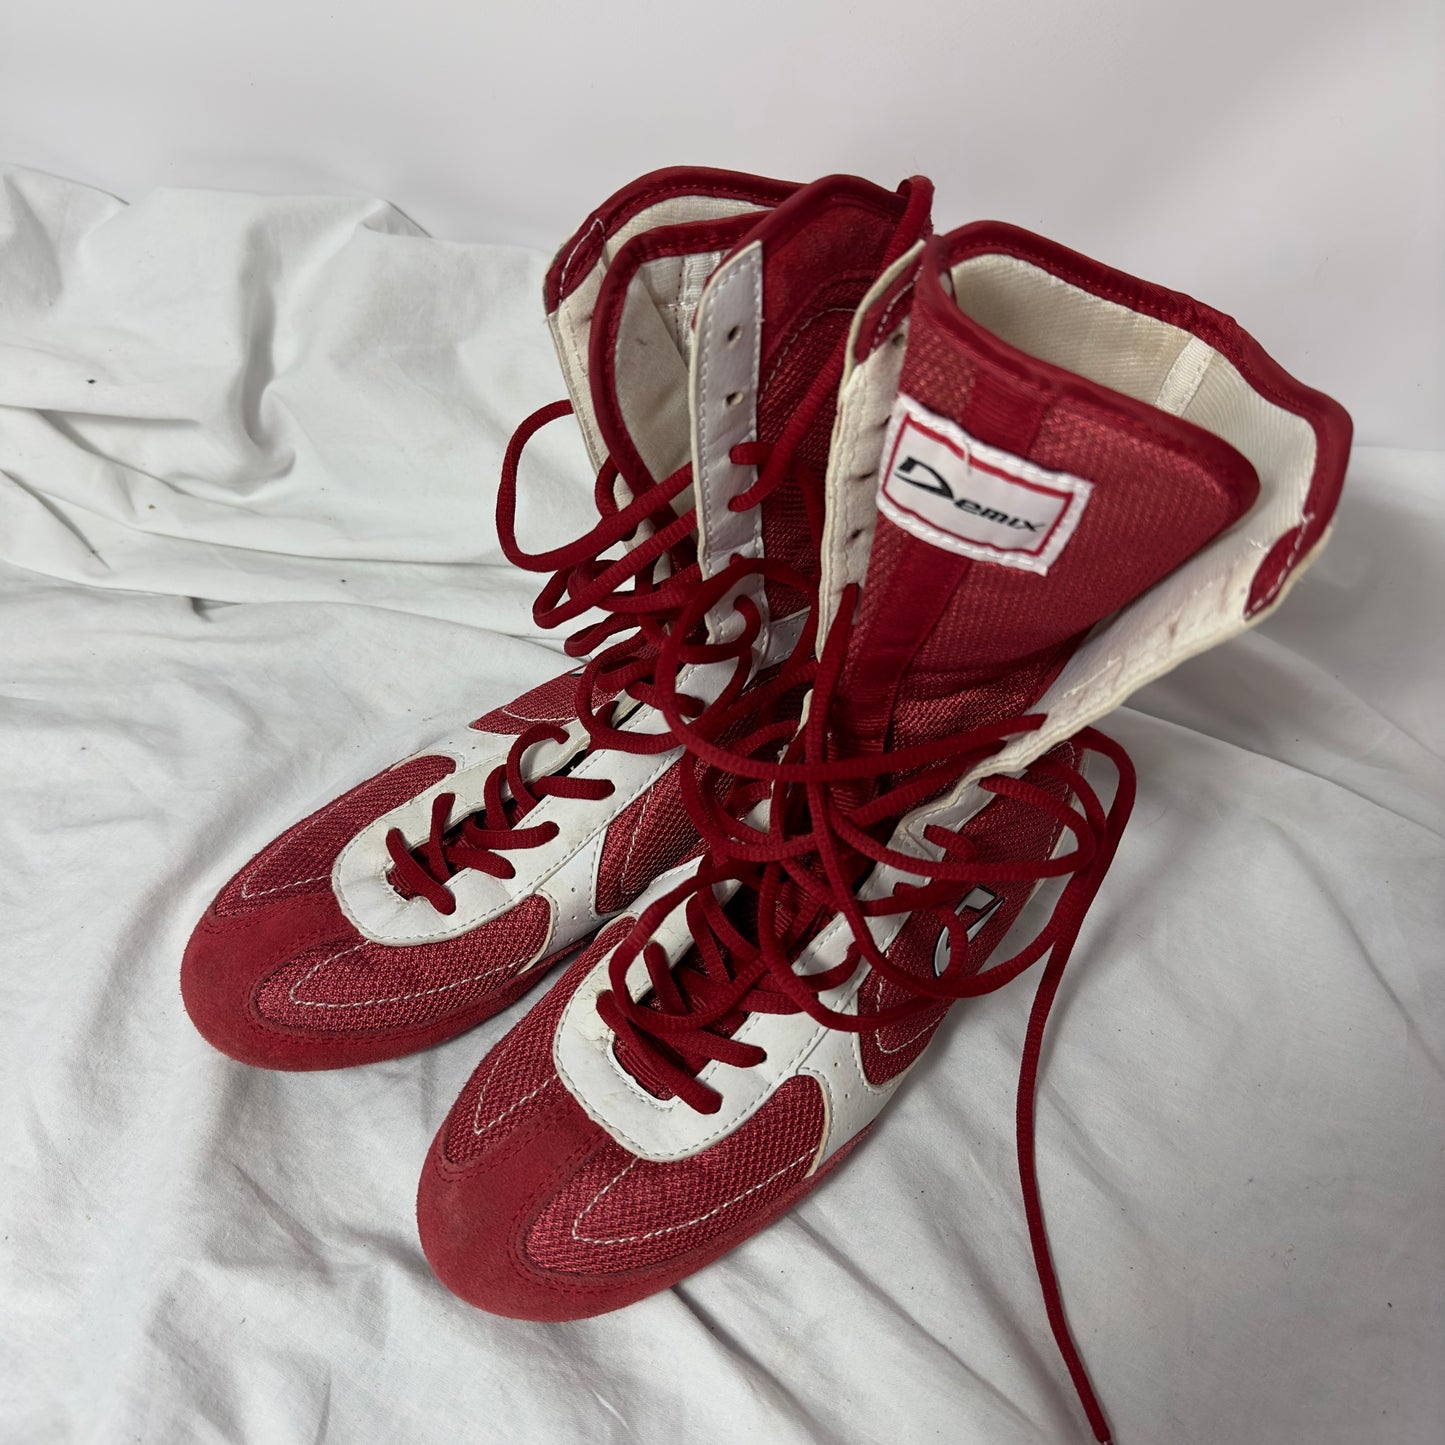 Demix Vintage Boxing Wrestling Boots